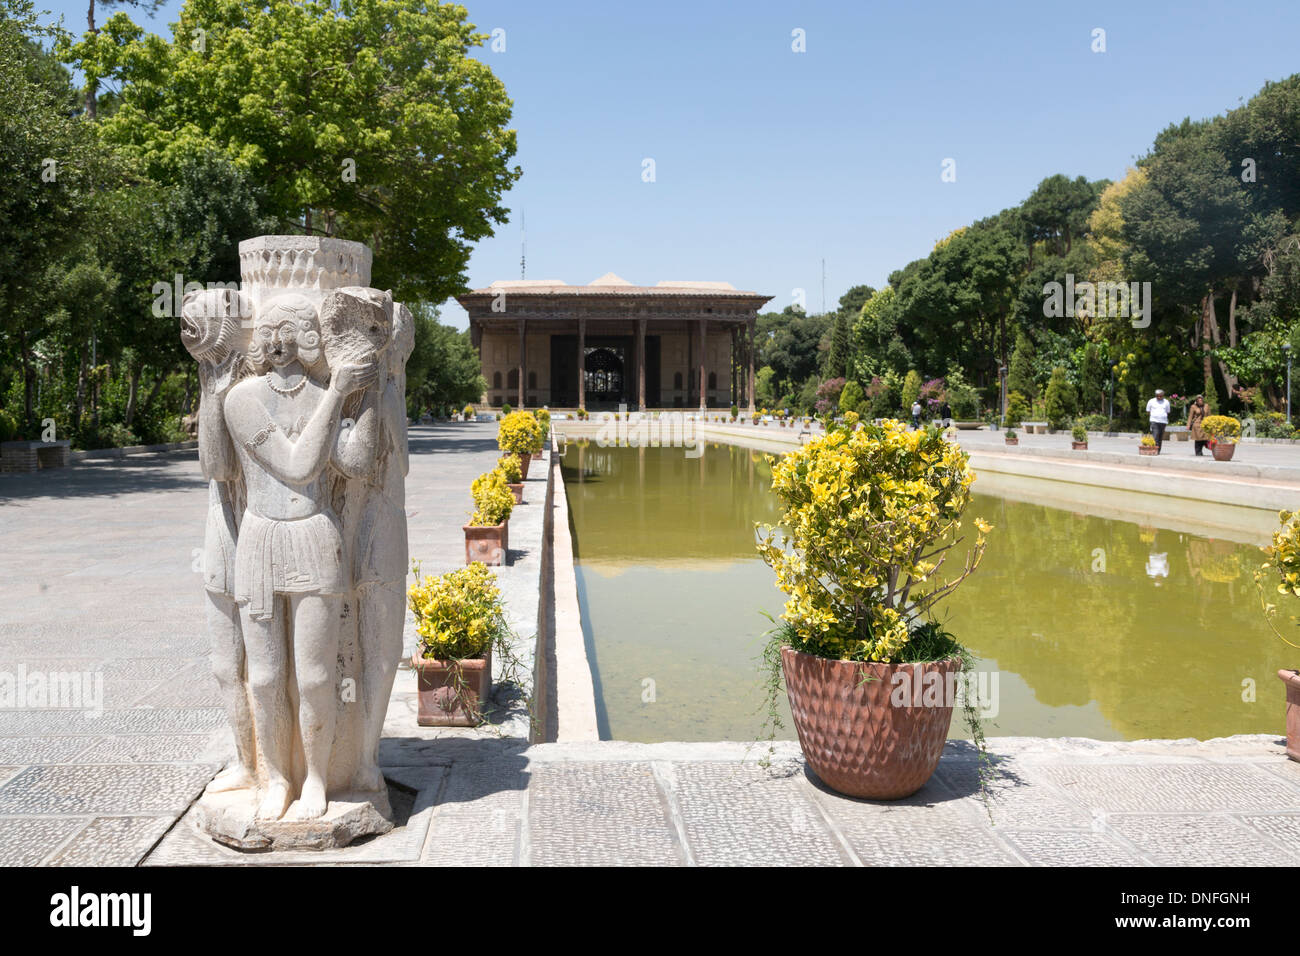 Chehel Sutun Palace, Isfahan, Iran Foto Stock